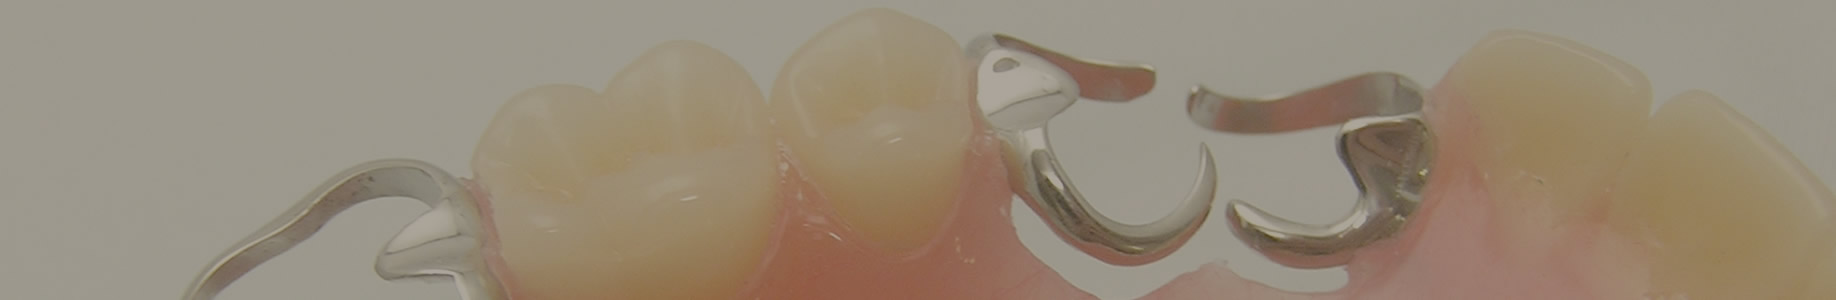 入れ歯(義歯)治療